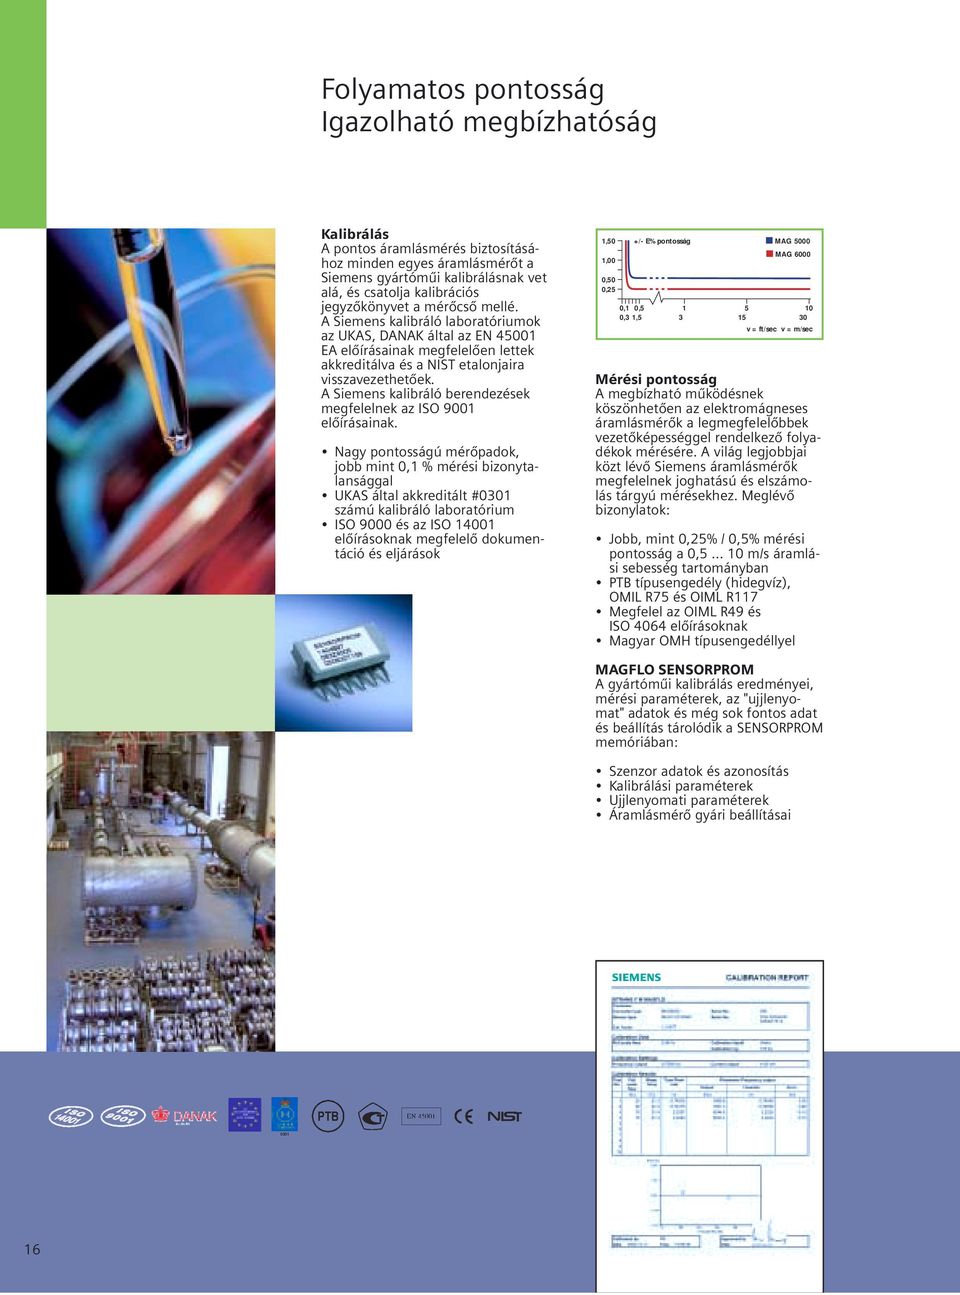 A Siemens kalibráló berendezések megfelelnek az ISO 9001 előírásainak.